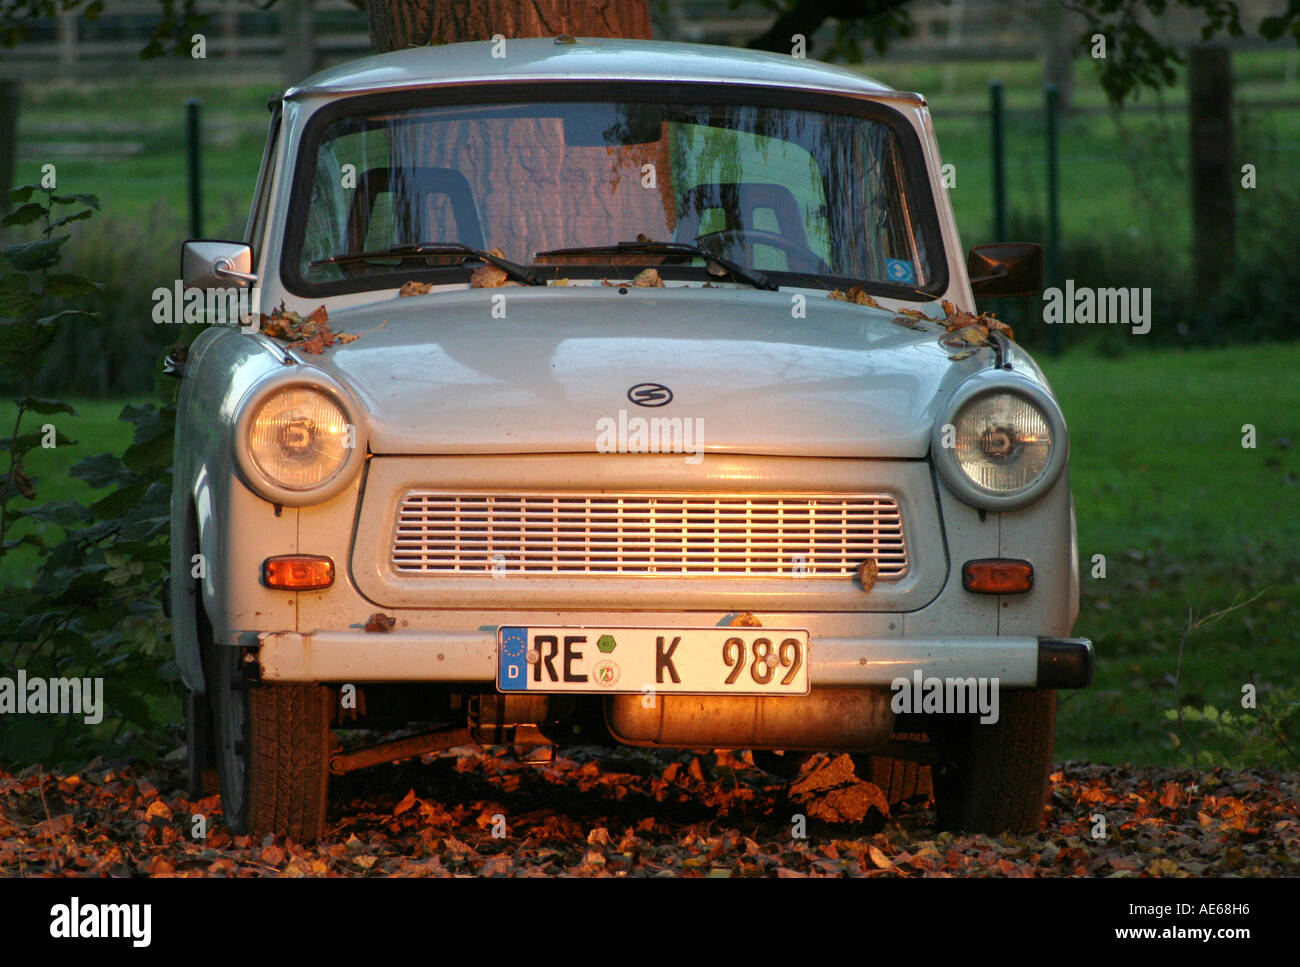 Trabant passenger car from the former GDR Stock Photo